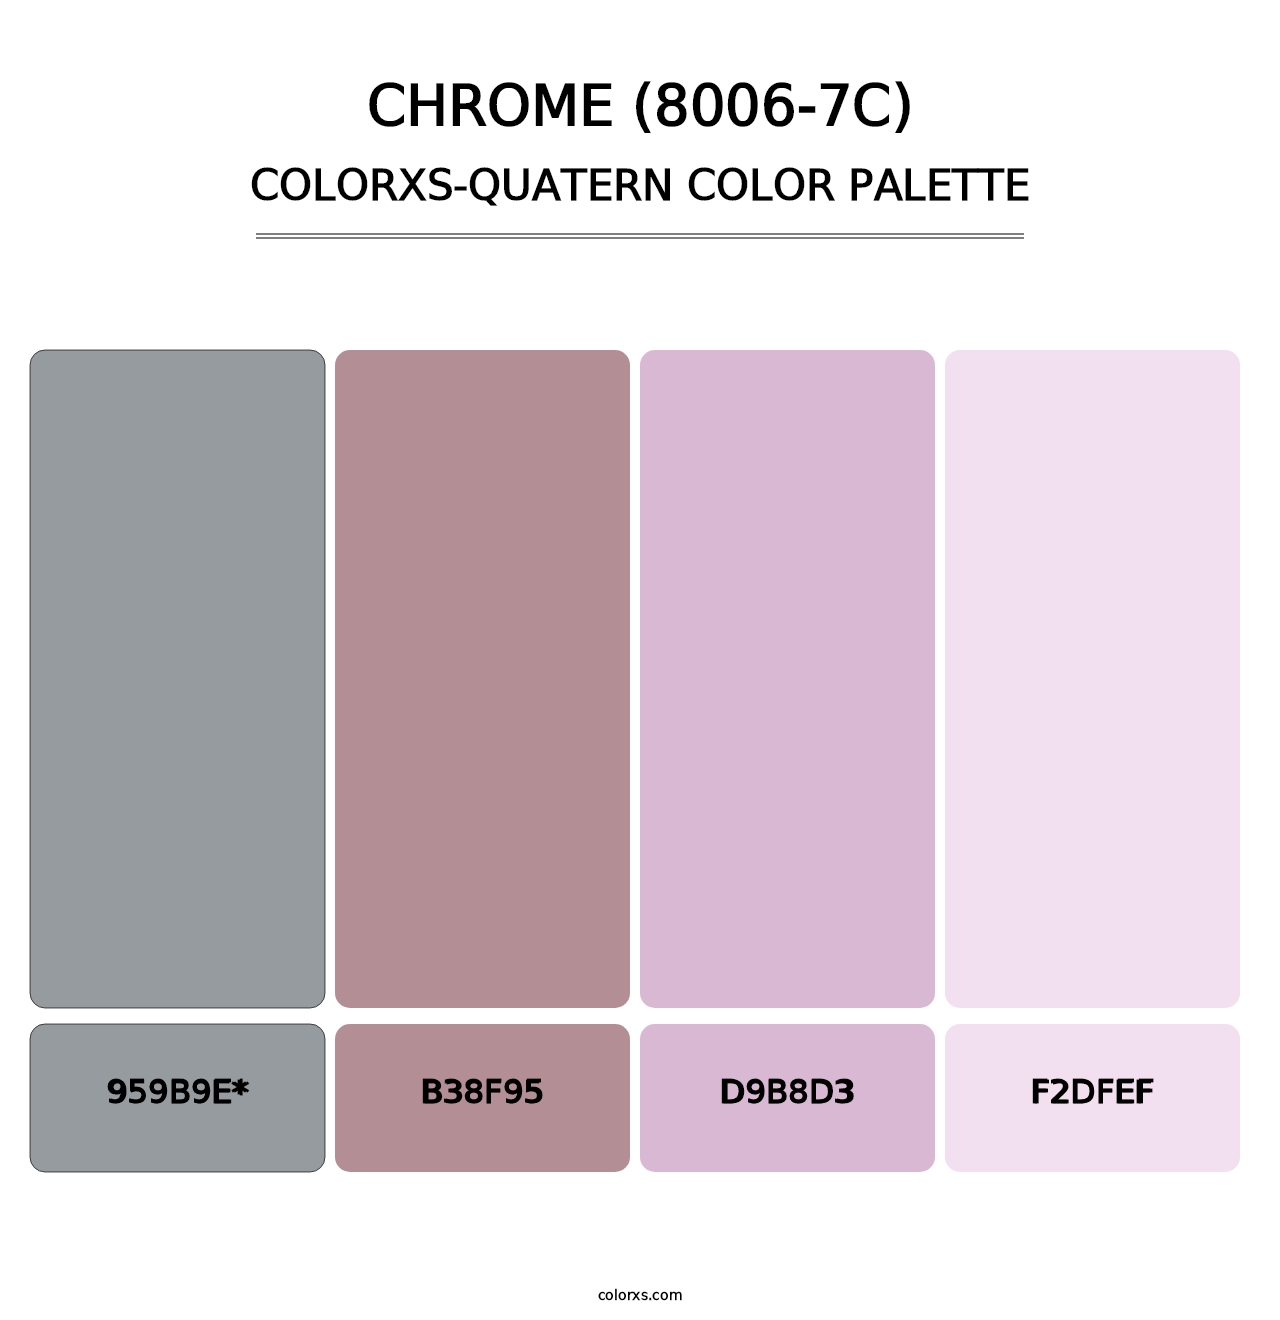 Chrome (8006-7C) - Colorxs Quatern Palette